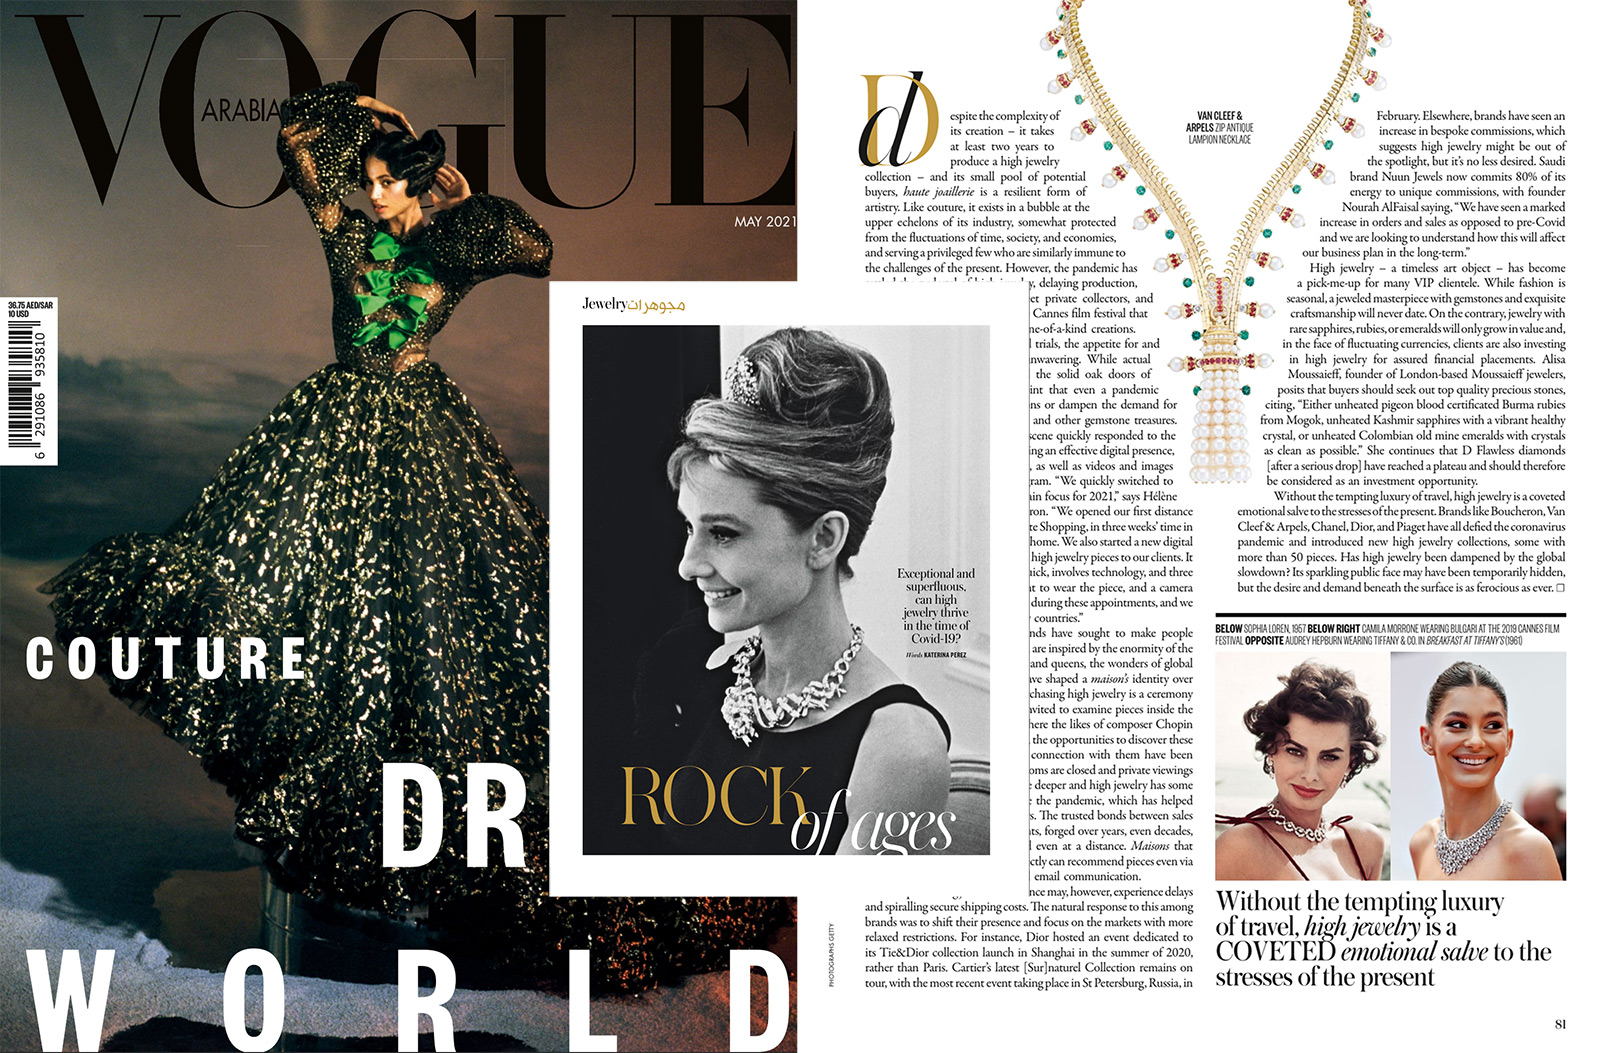 Я с радостью согласилась провести исследование влияния пандемии на мир высокого ювелирного искусства для Vogue Arabia